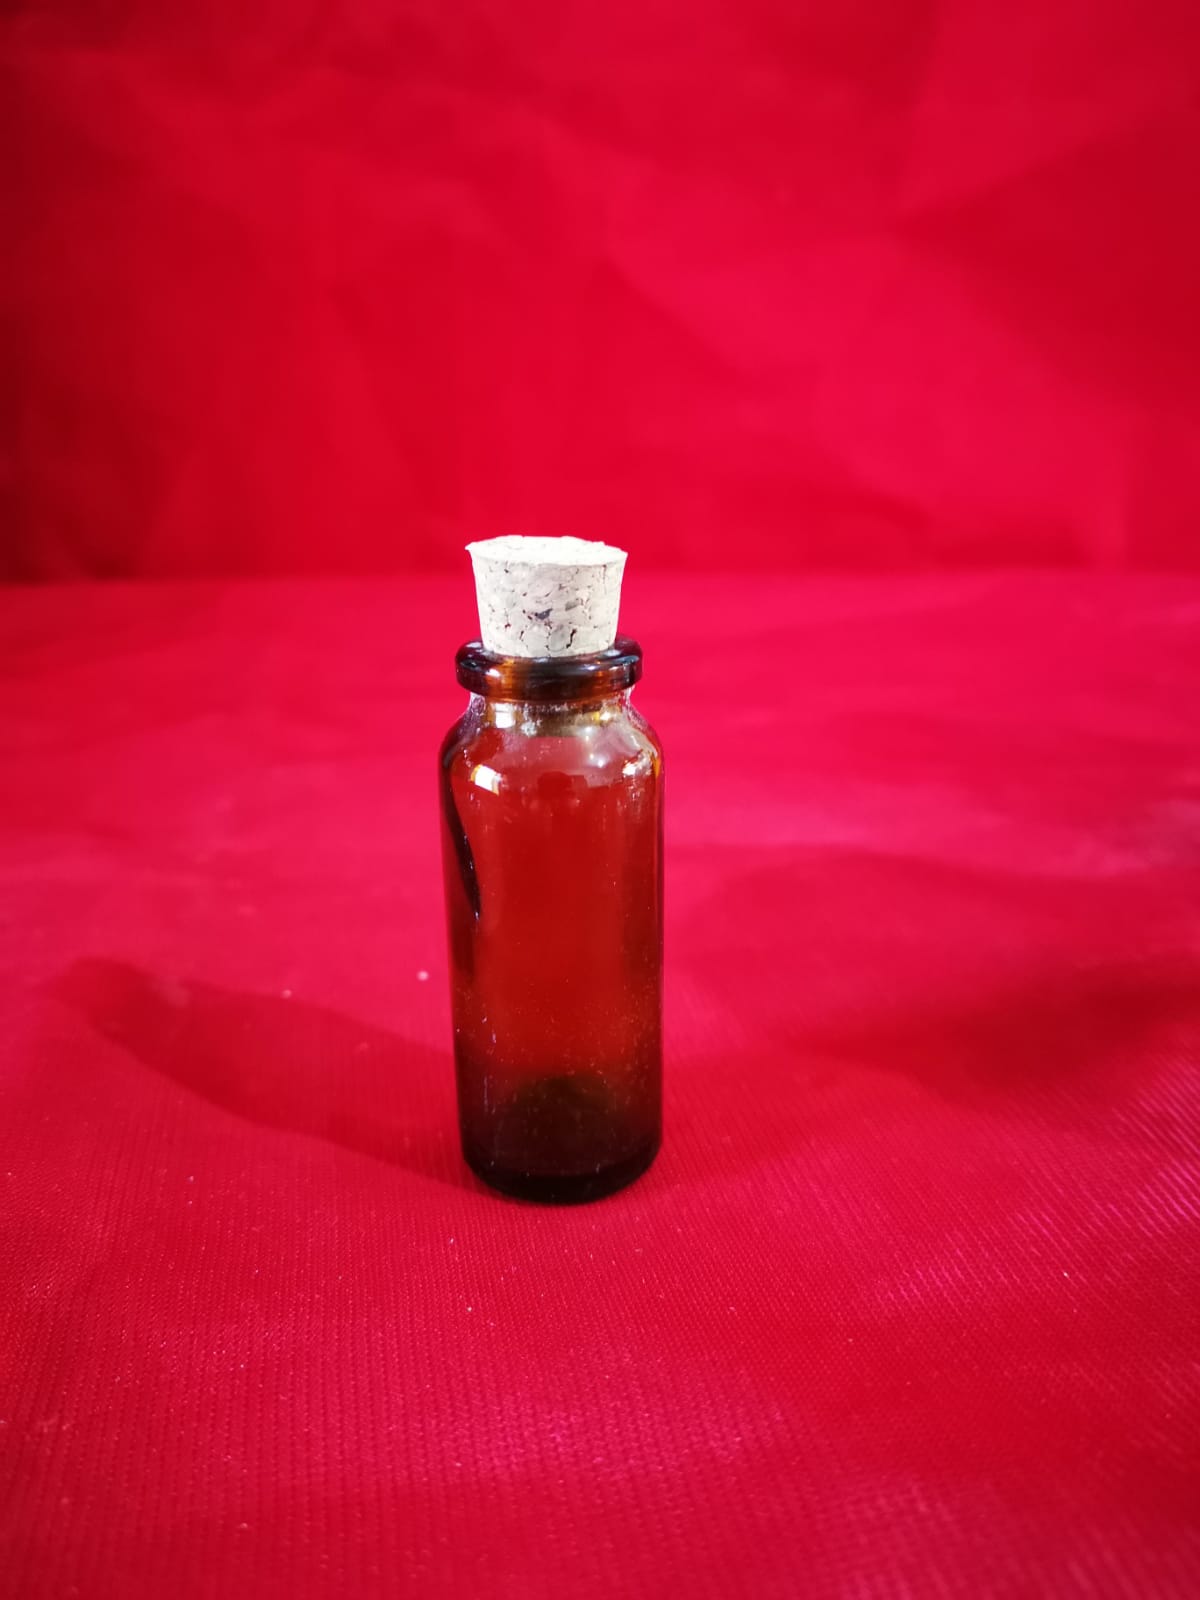 15cc penisilin ilaç şişesi renkli